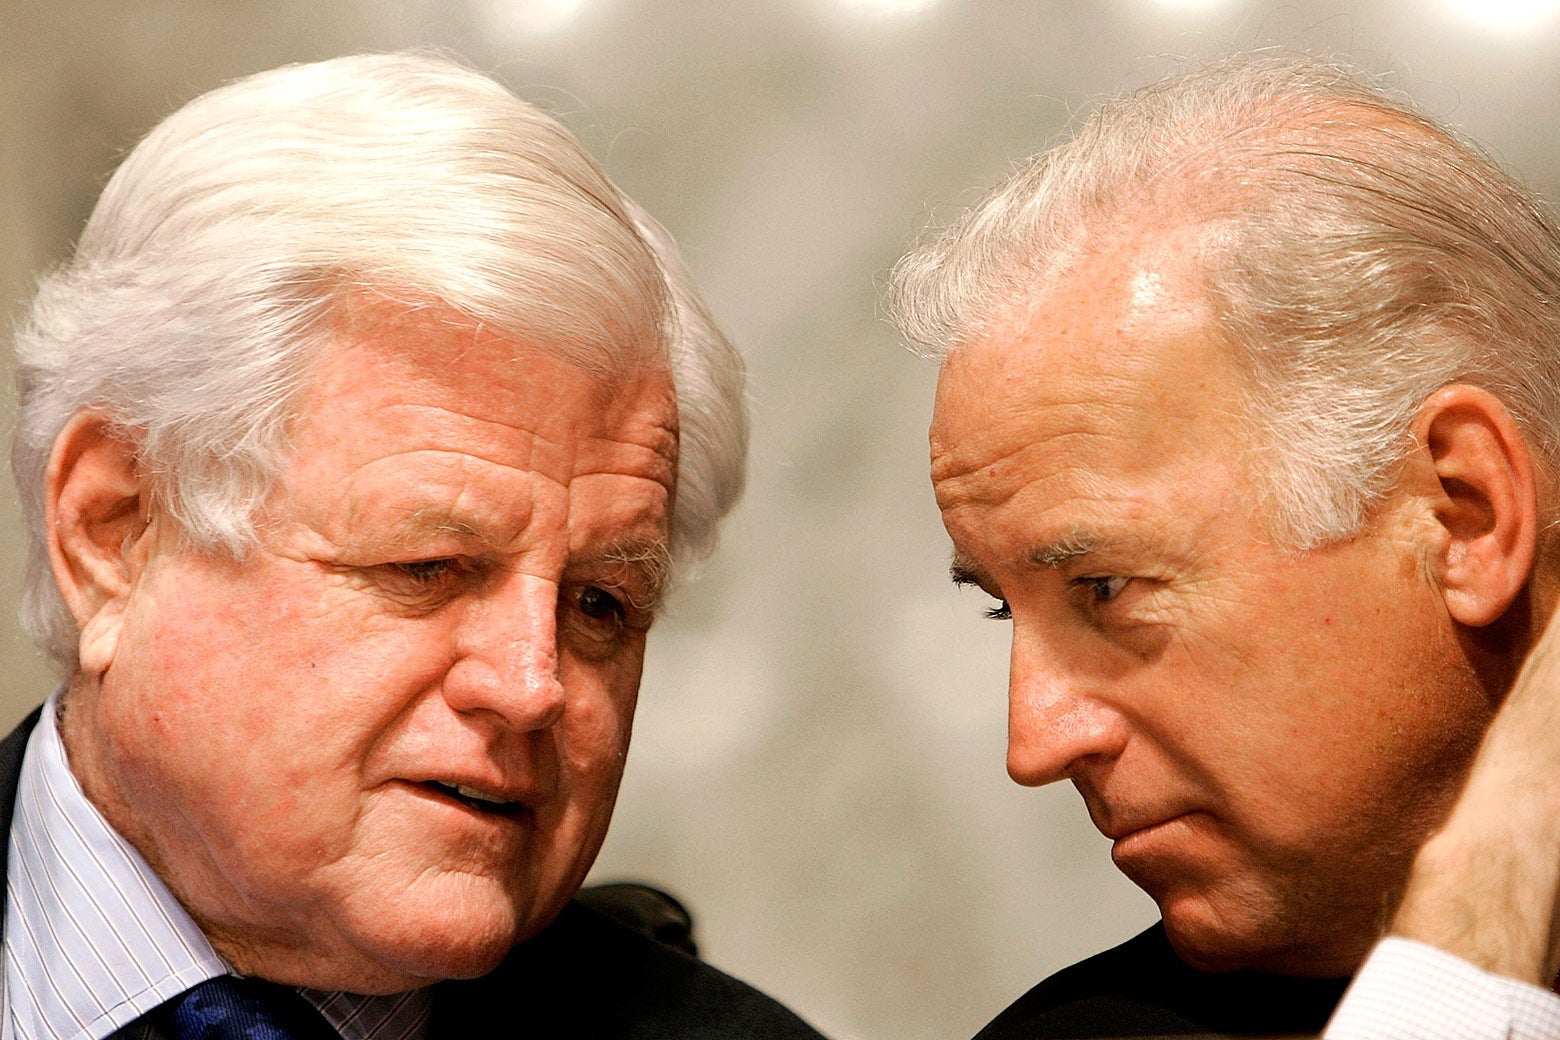 Kennedy speaks to Biden, who is leaning in